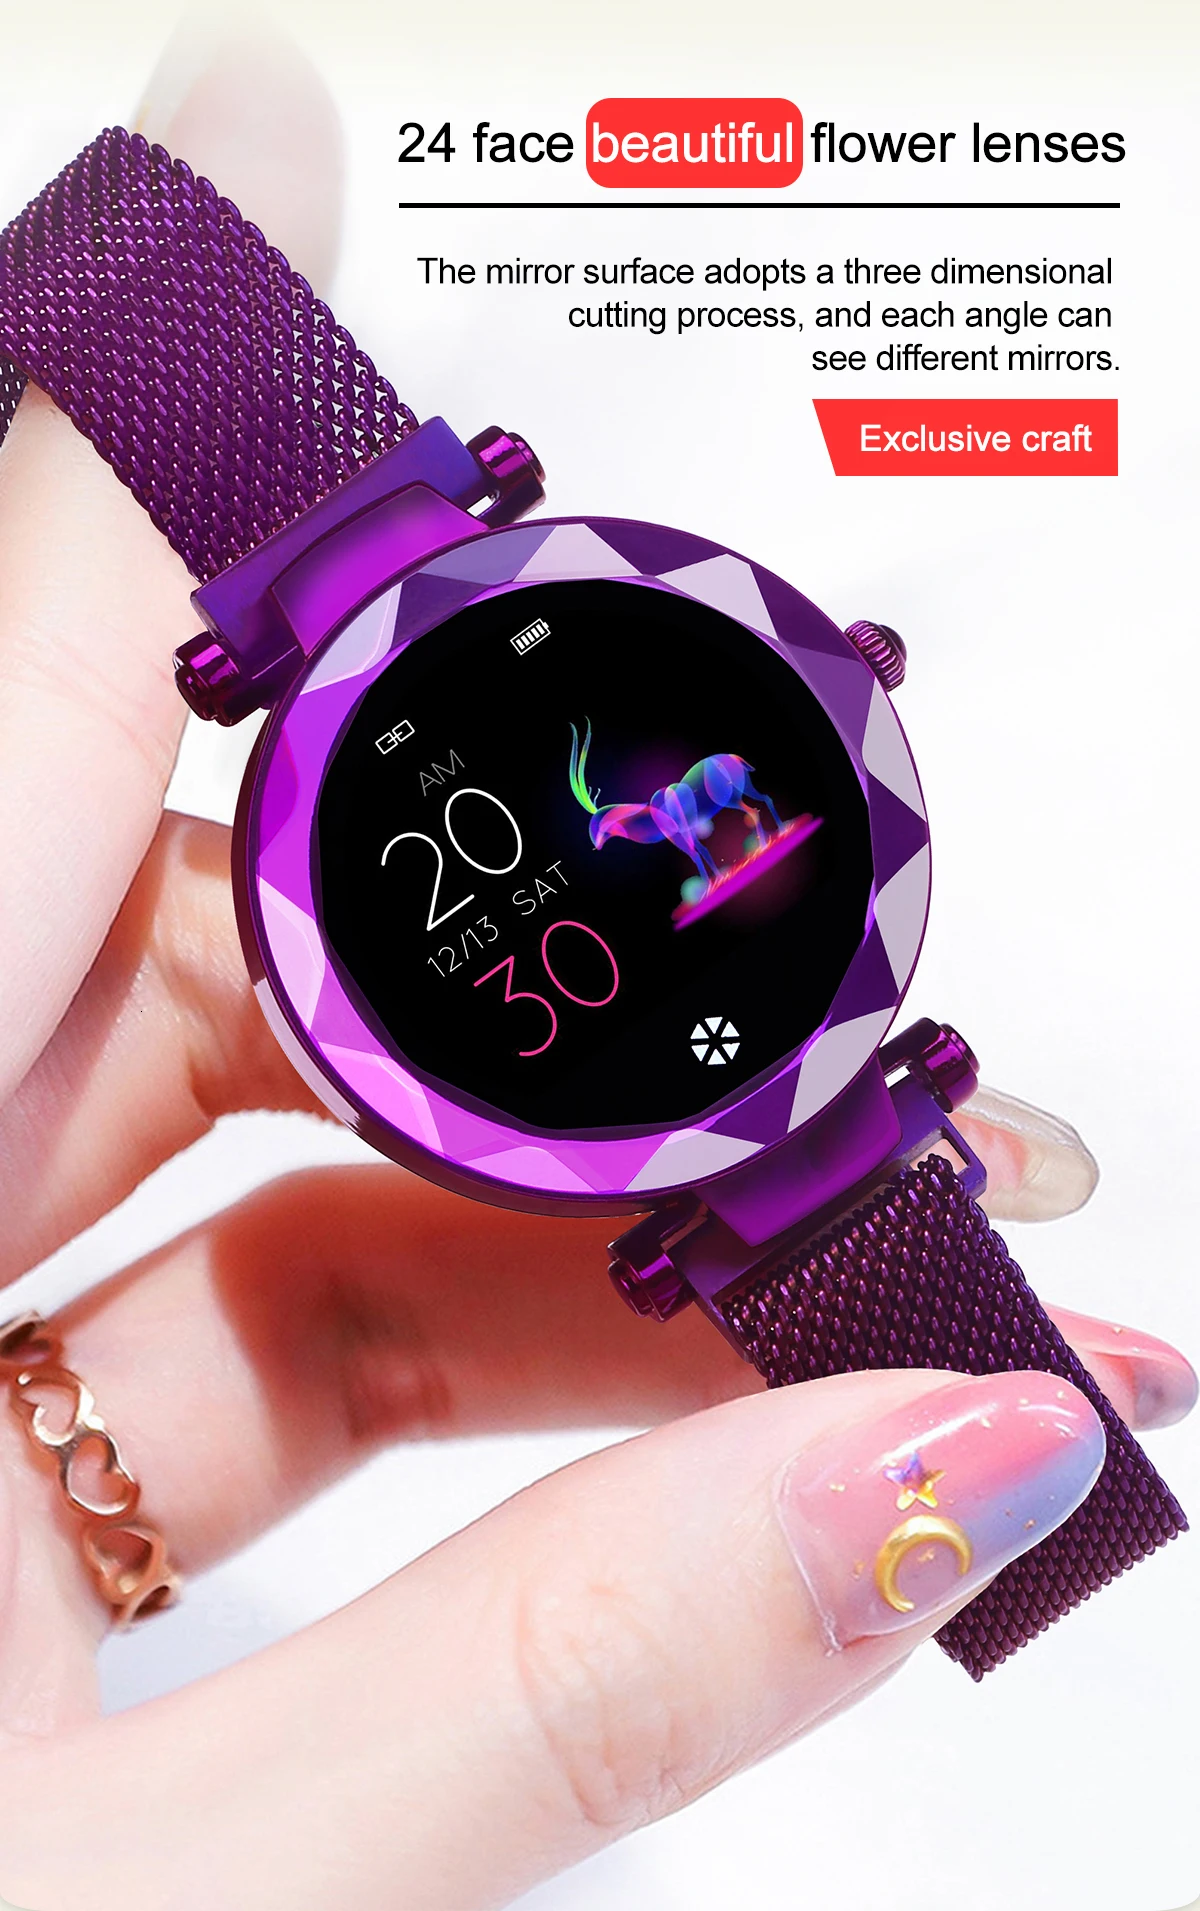 HI18 Смарт-часы reloj inteligente relogio android трекер montre подключение akilli saatler zegarek для женщин и мужчин